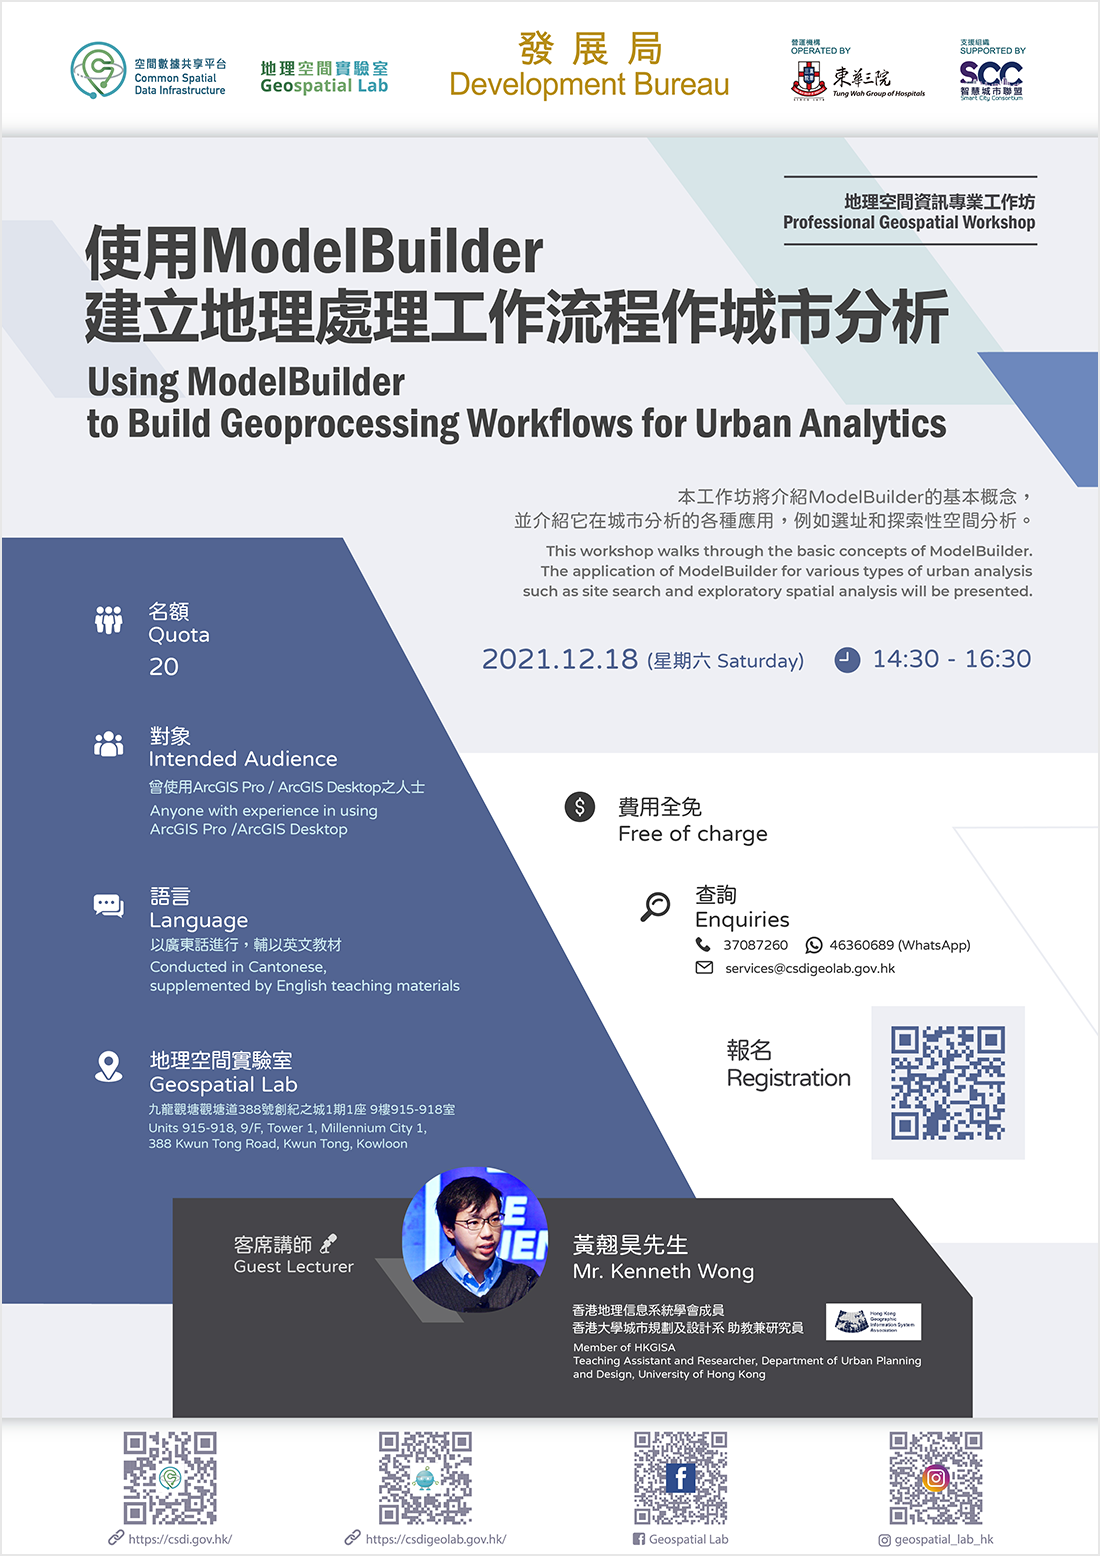 地理空間資訊專業工作坊 「使用ModelBuilder建立地理處理工作流程作城市分析」